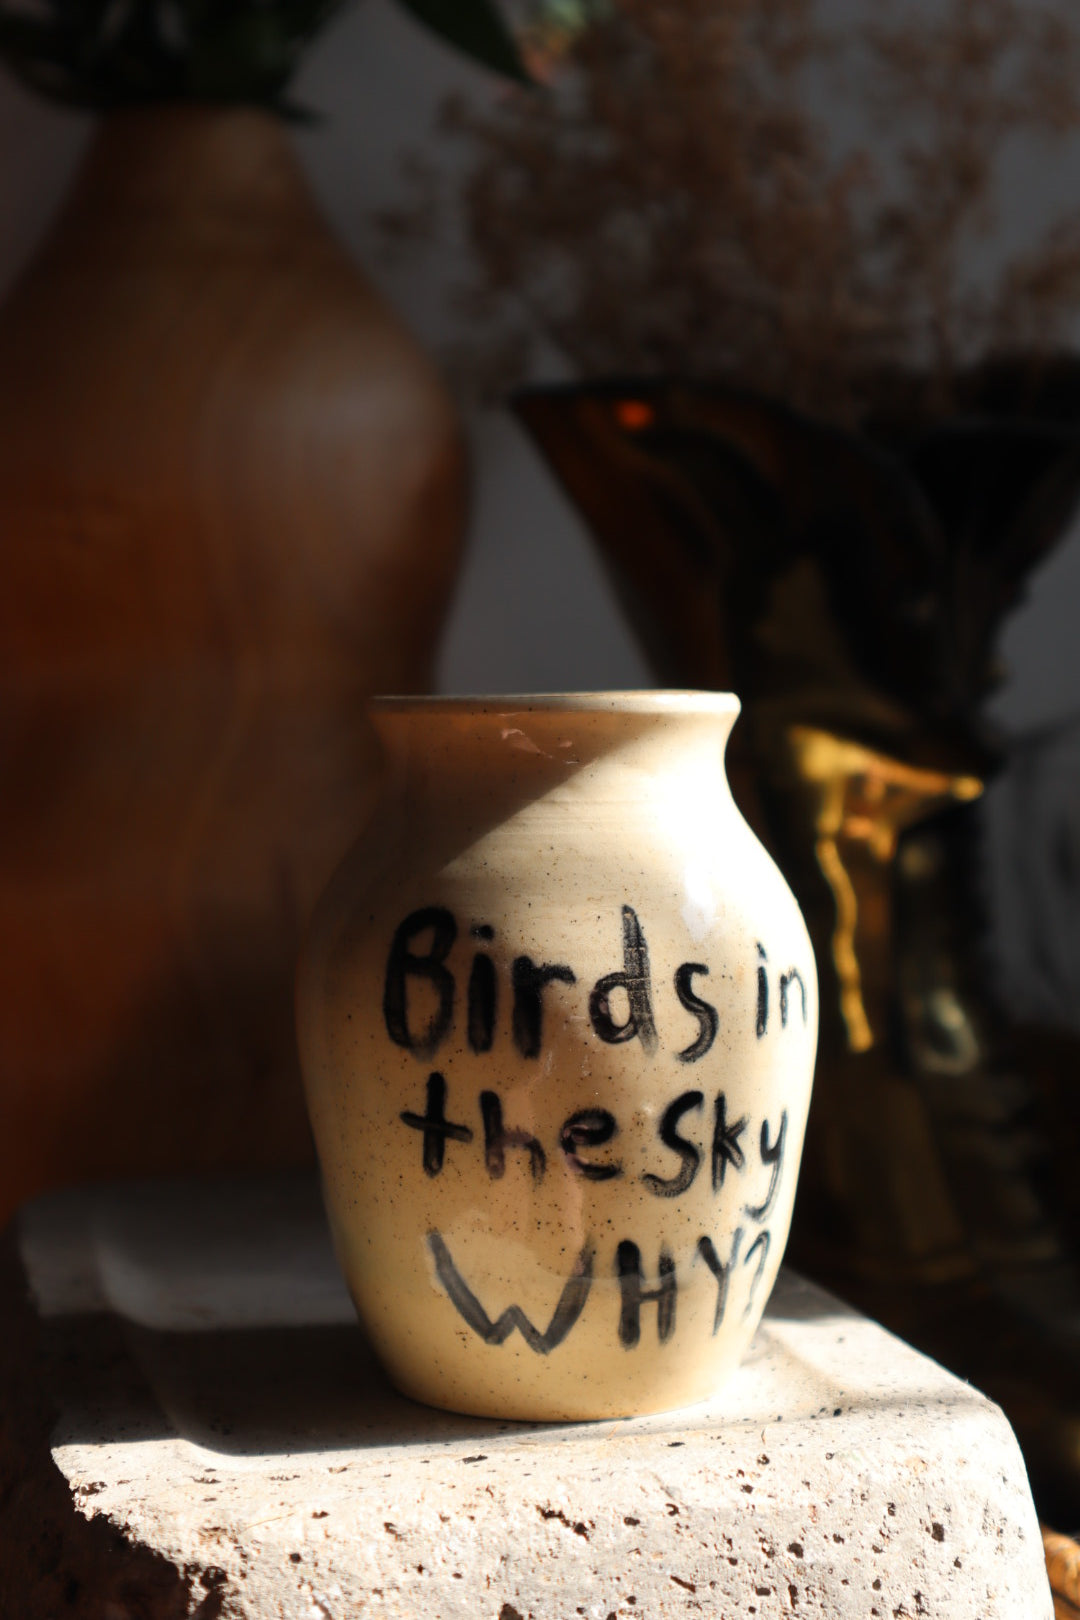 Birds in the Sky Vase